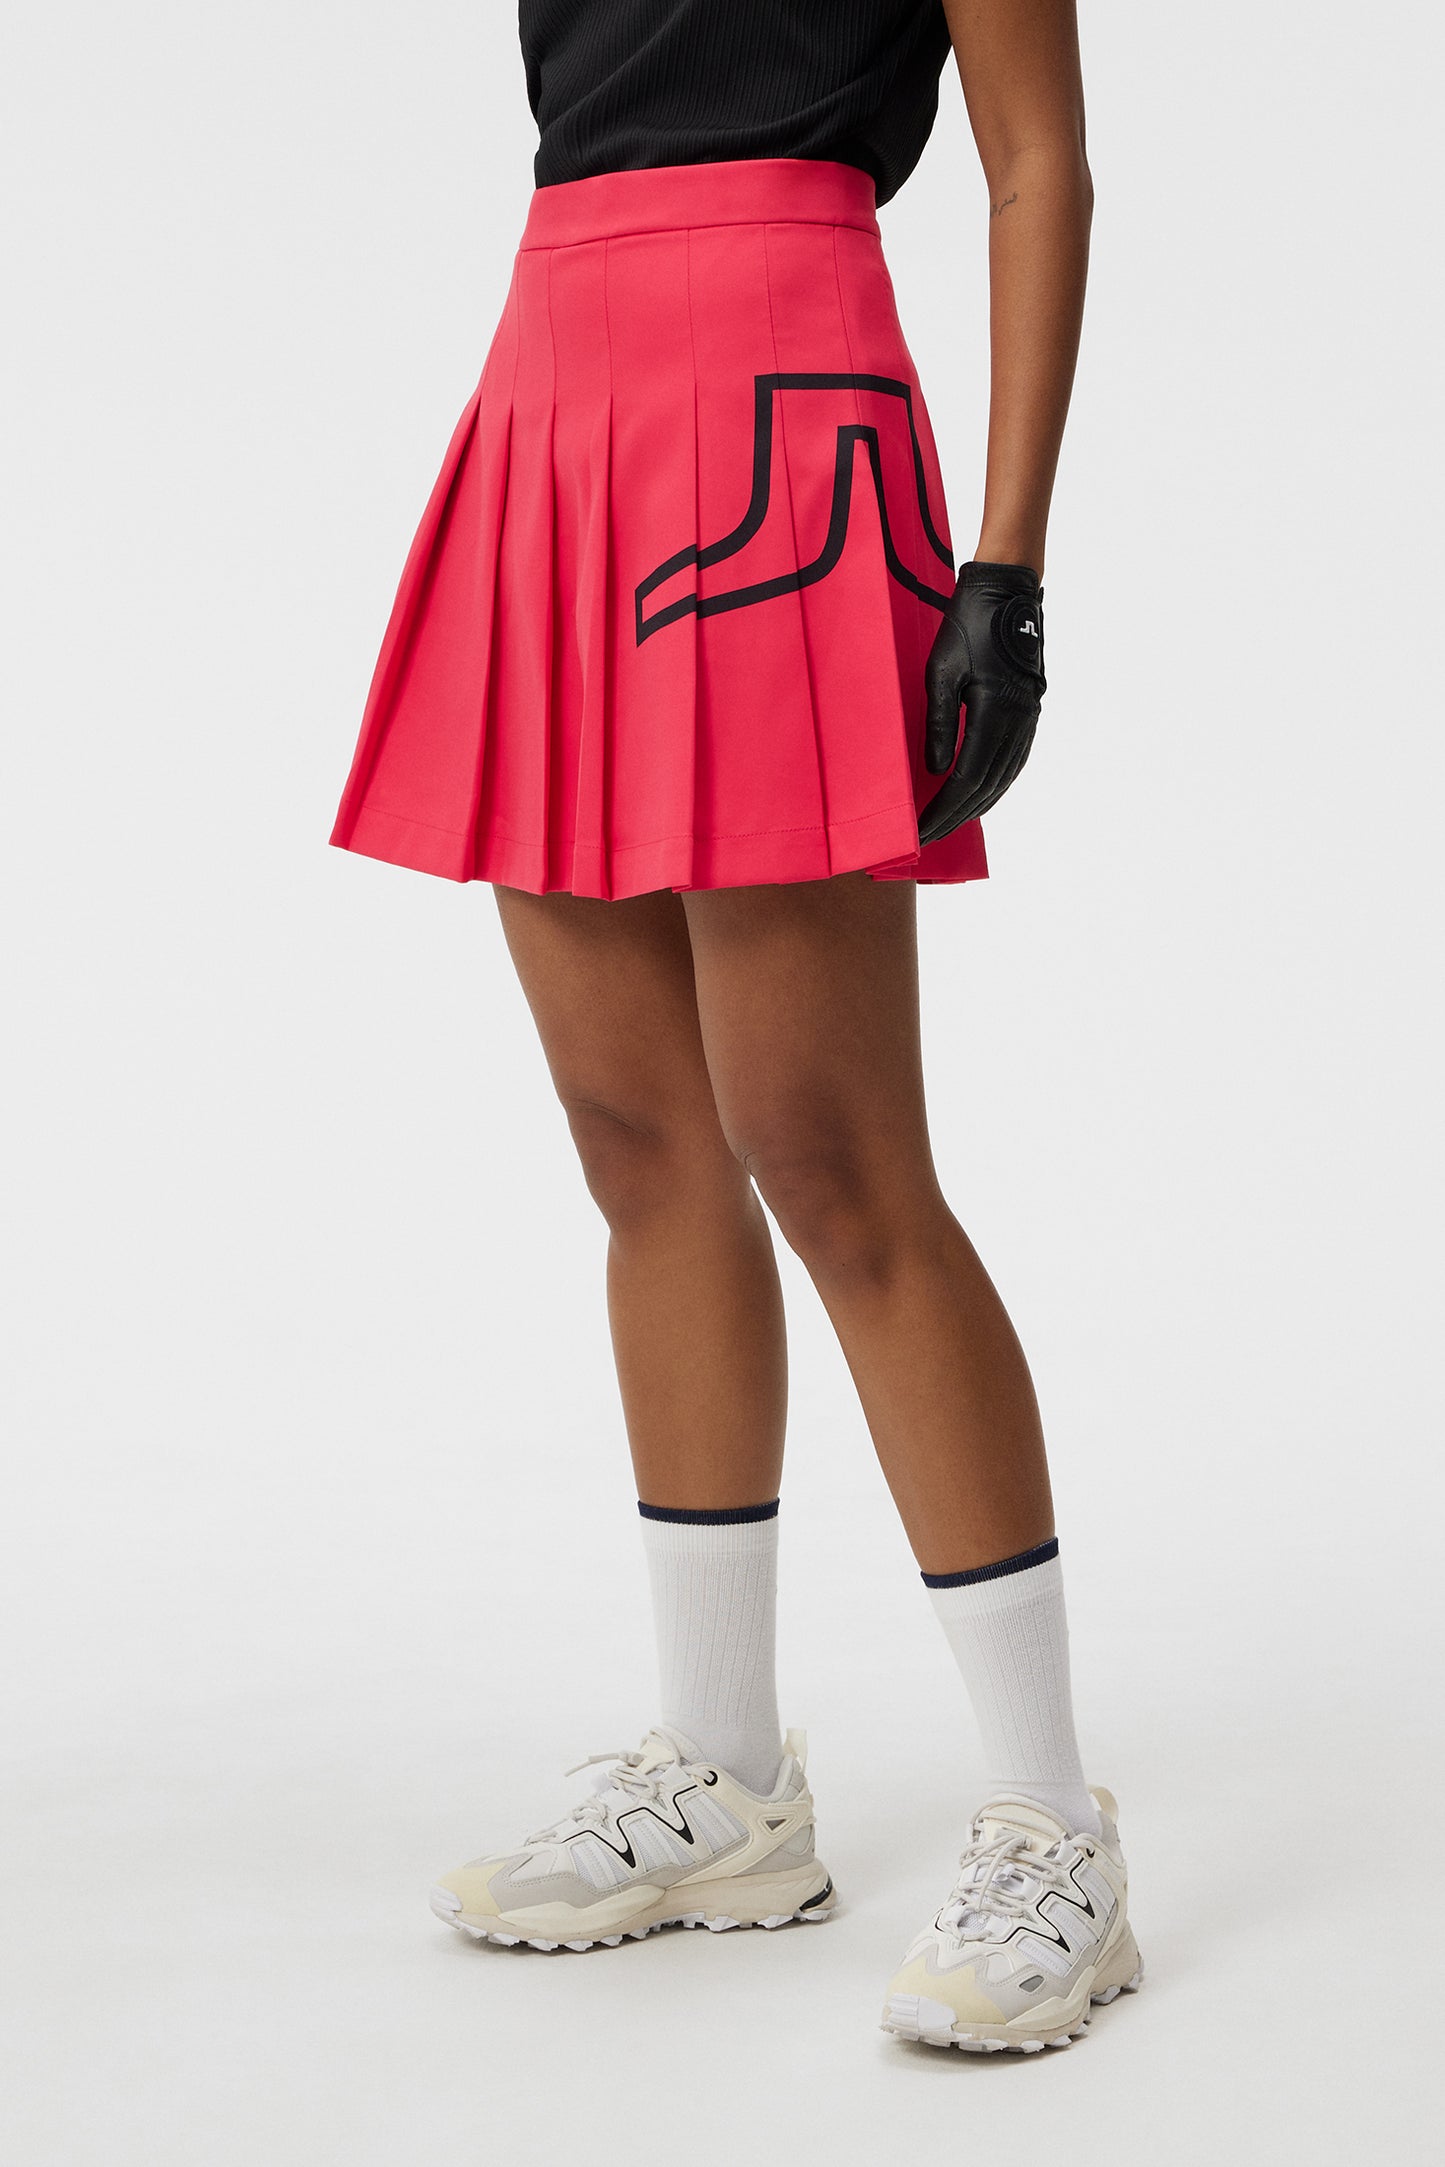 Naomi Skirt / Rose Red